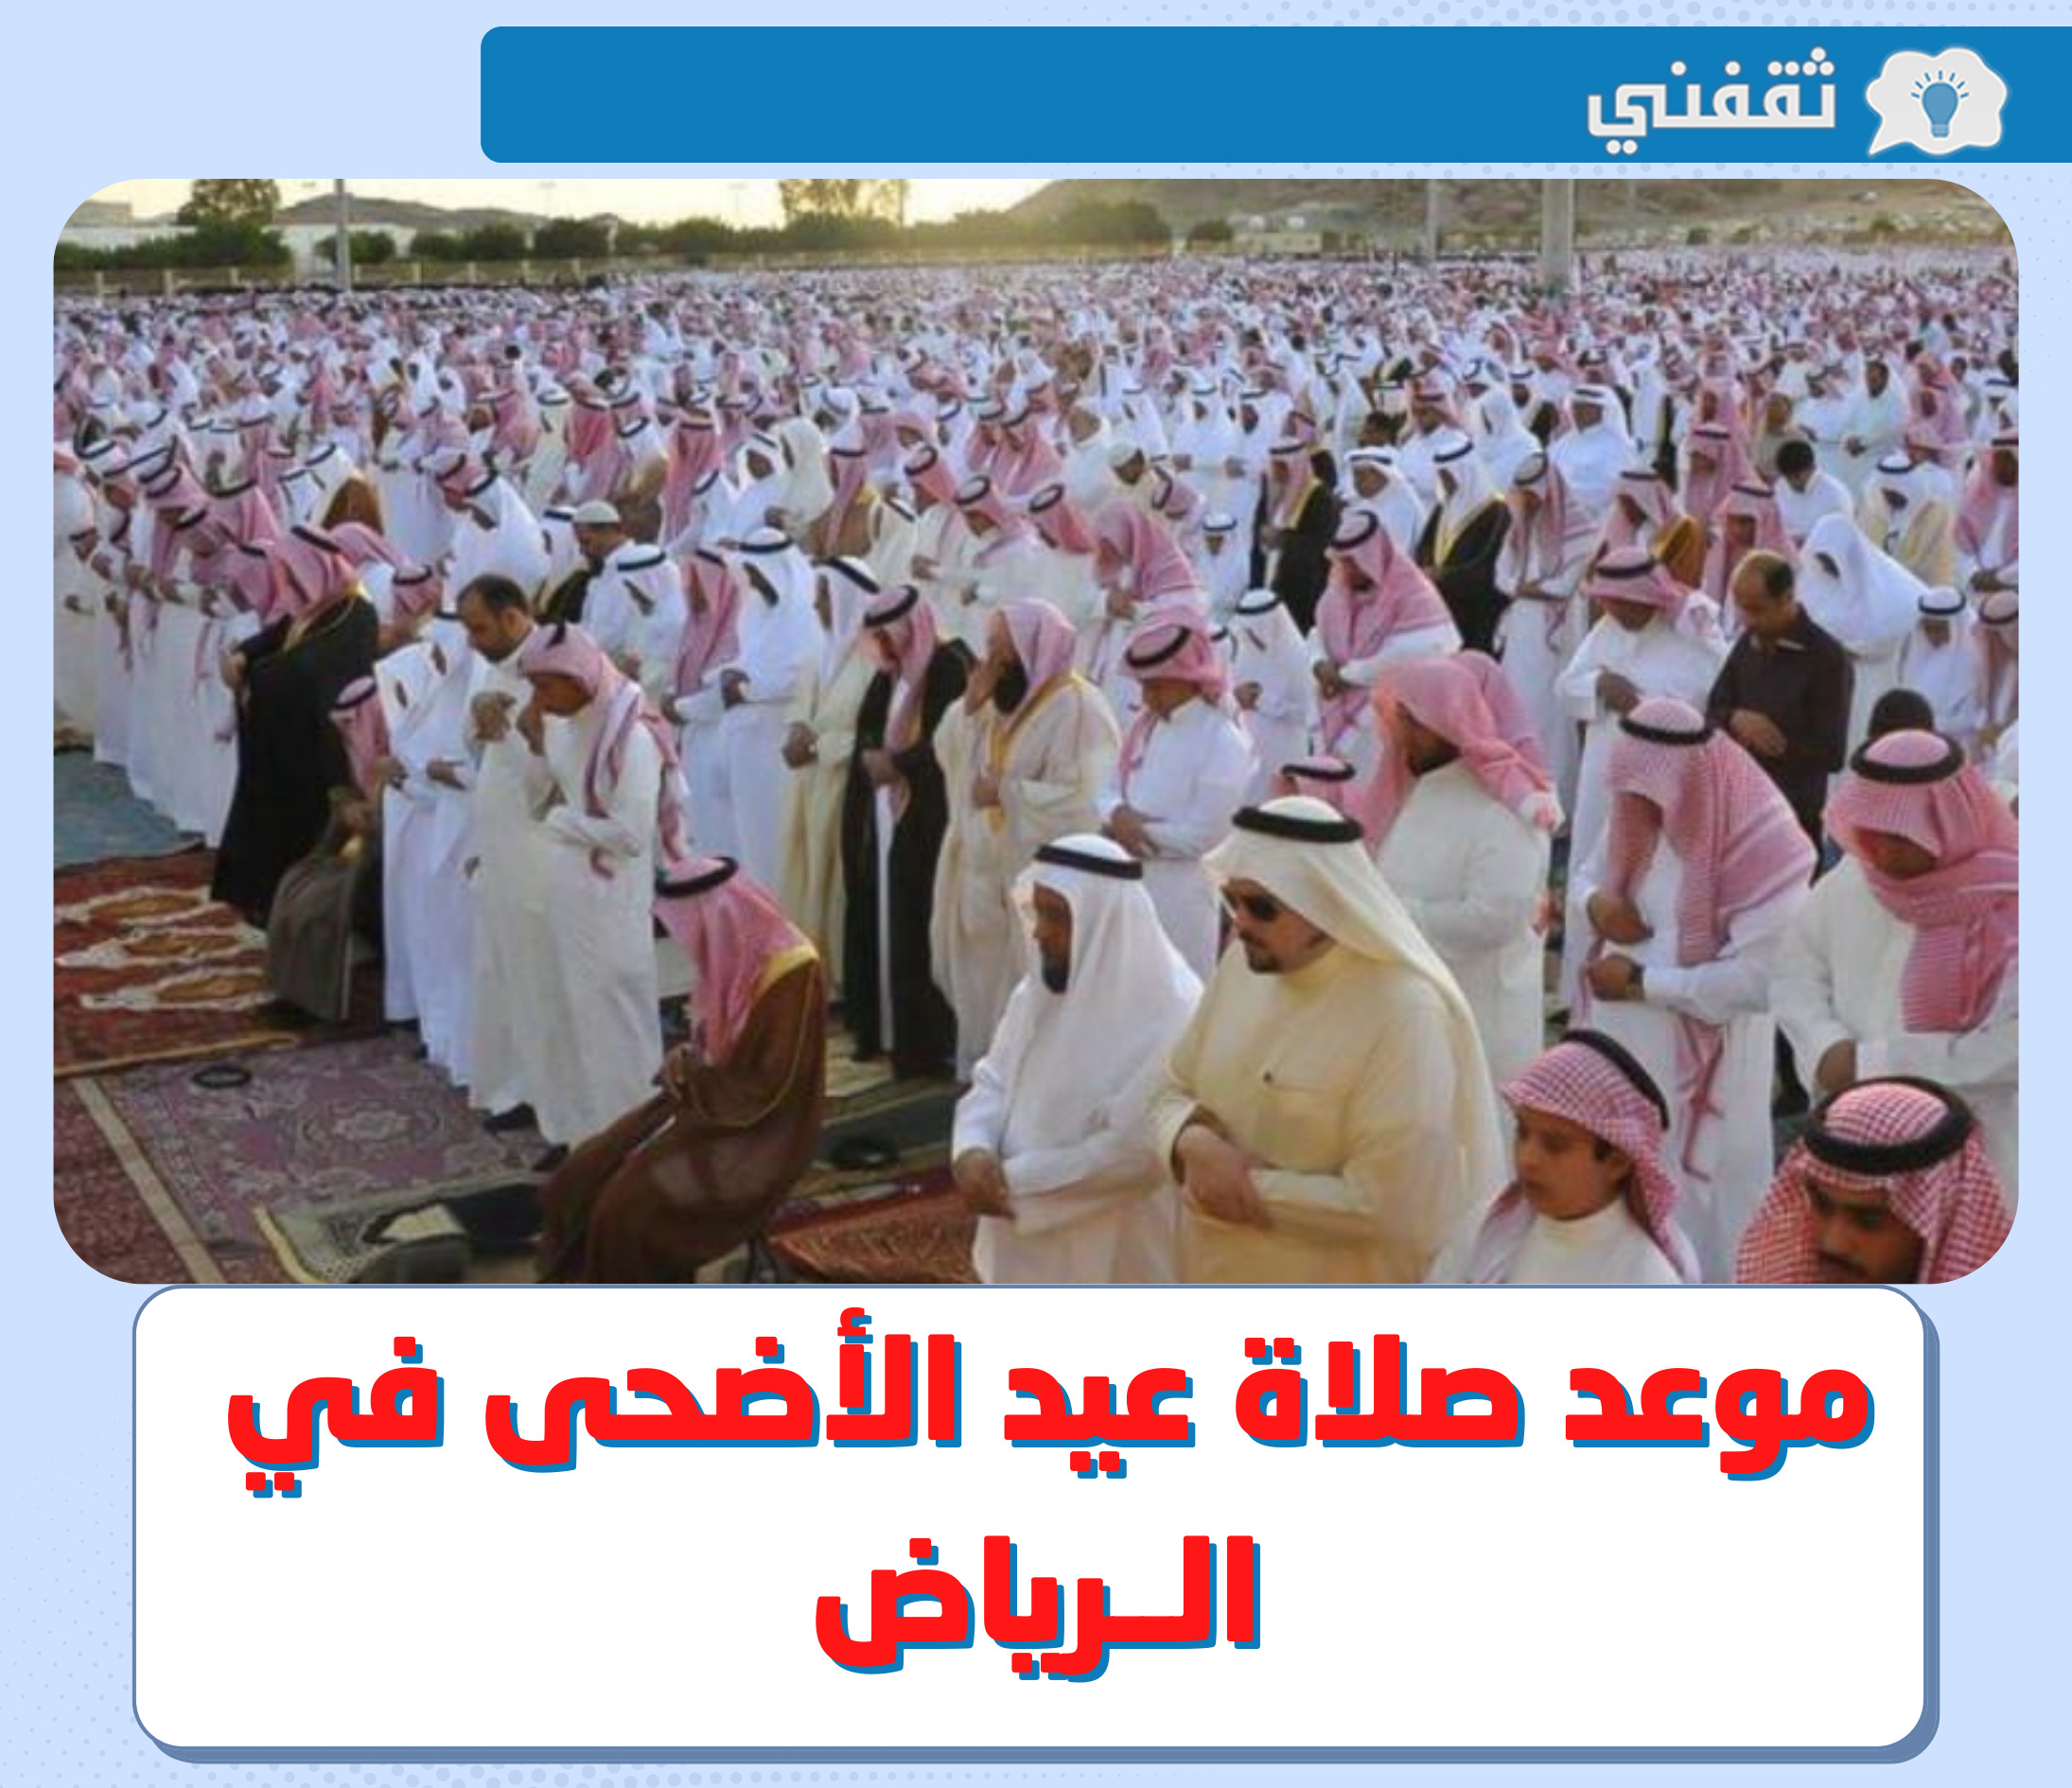 وقت صلاة العيد الرياض || متى موعد صلاة عيد الاضحى في الرياض 2022 - 1443 ؟